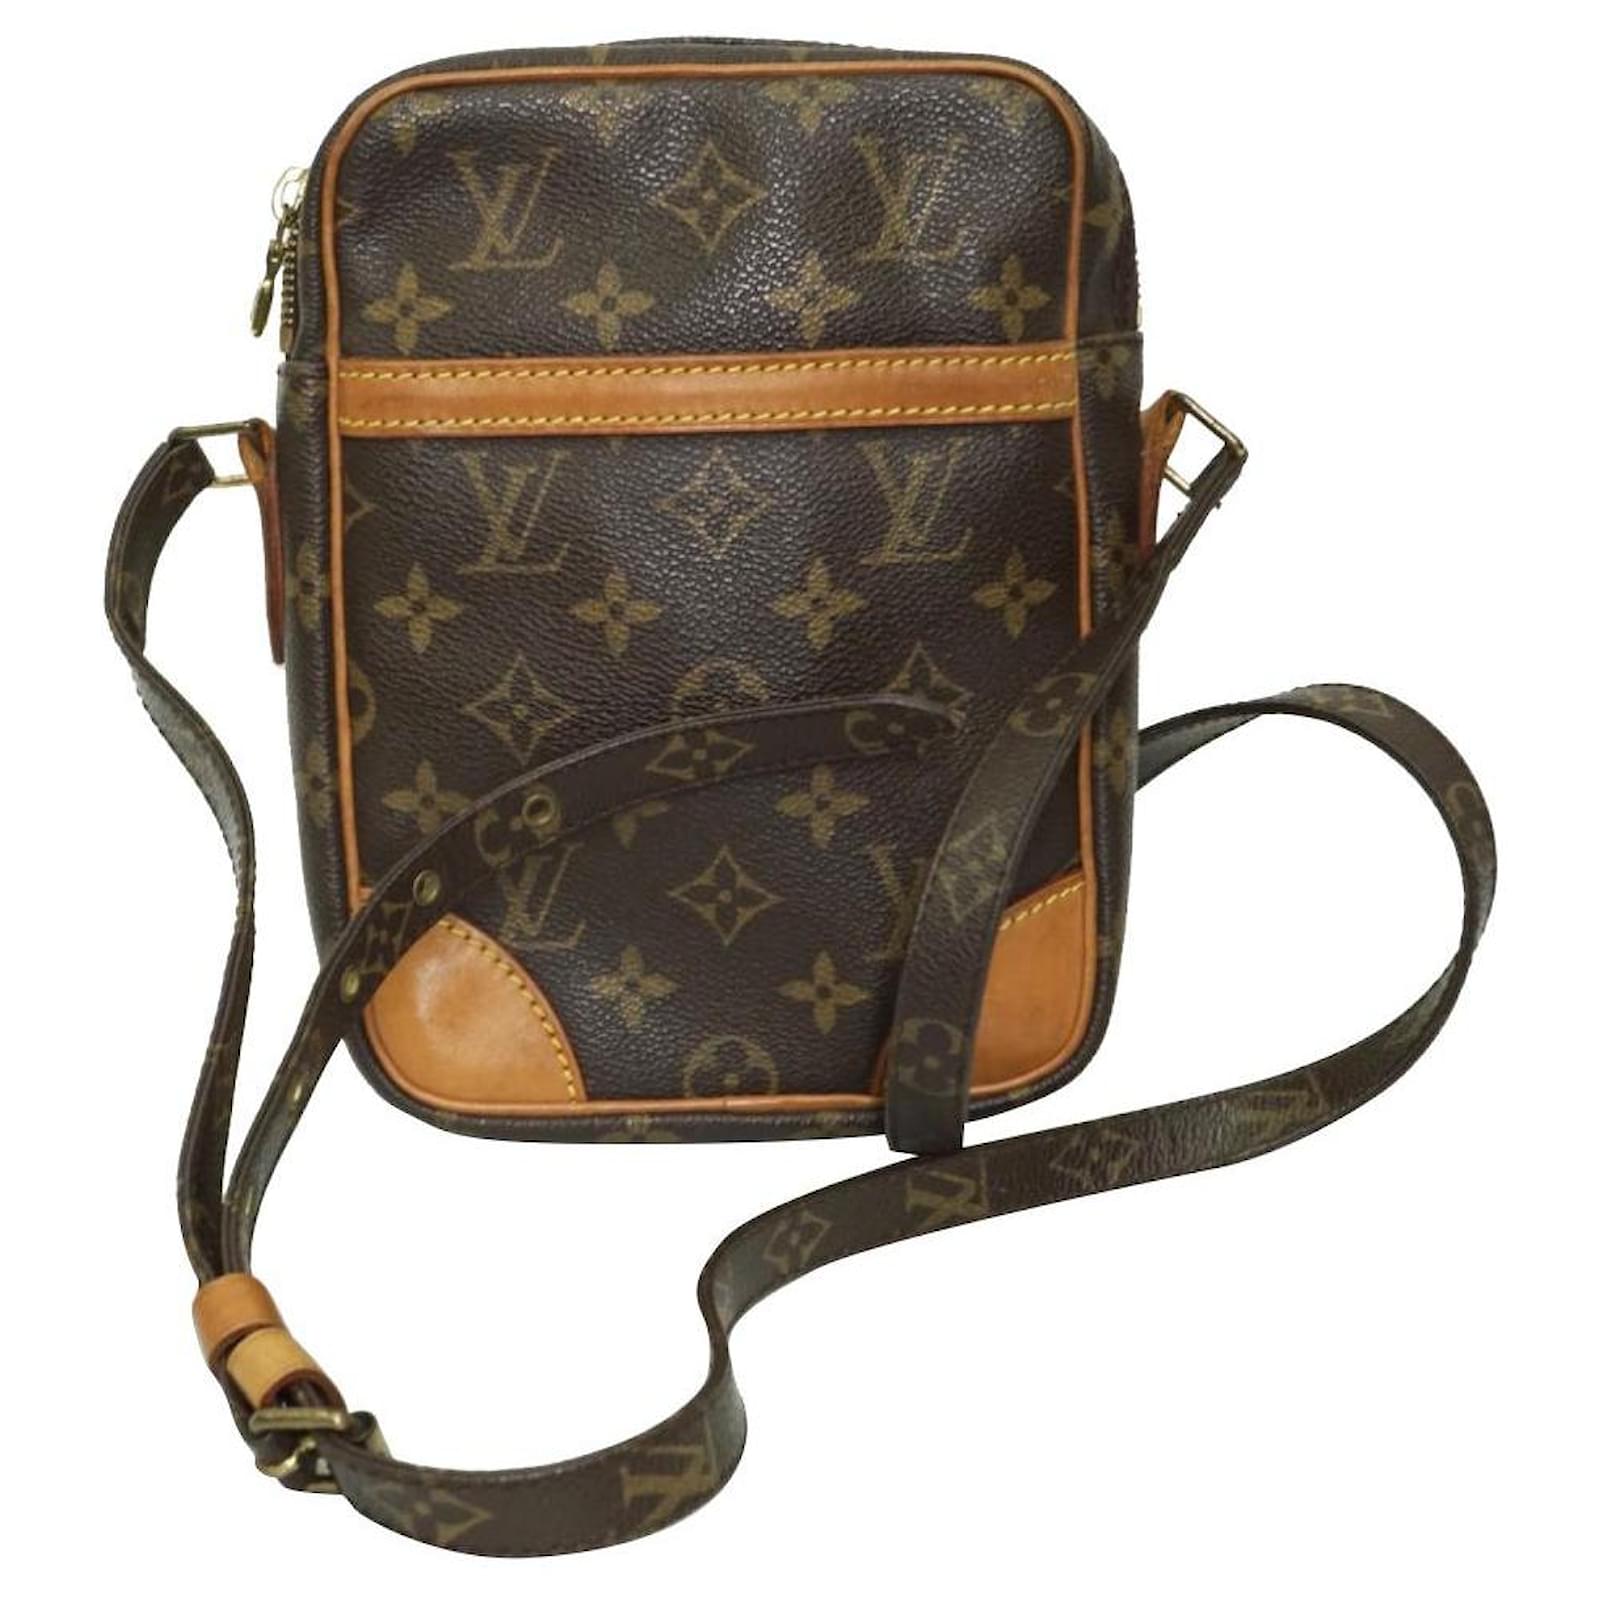 Louis Vuitton Danube Black Canvas Shoulder Bag (Pre-Owned) - ShopStyle